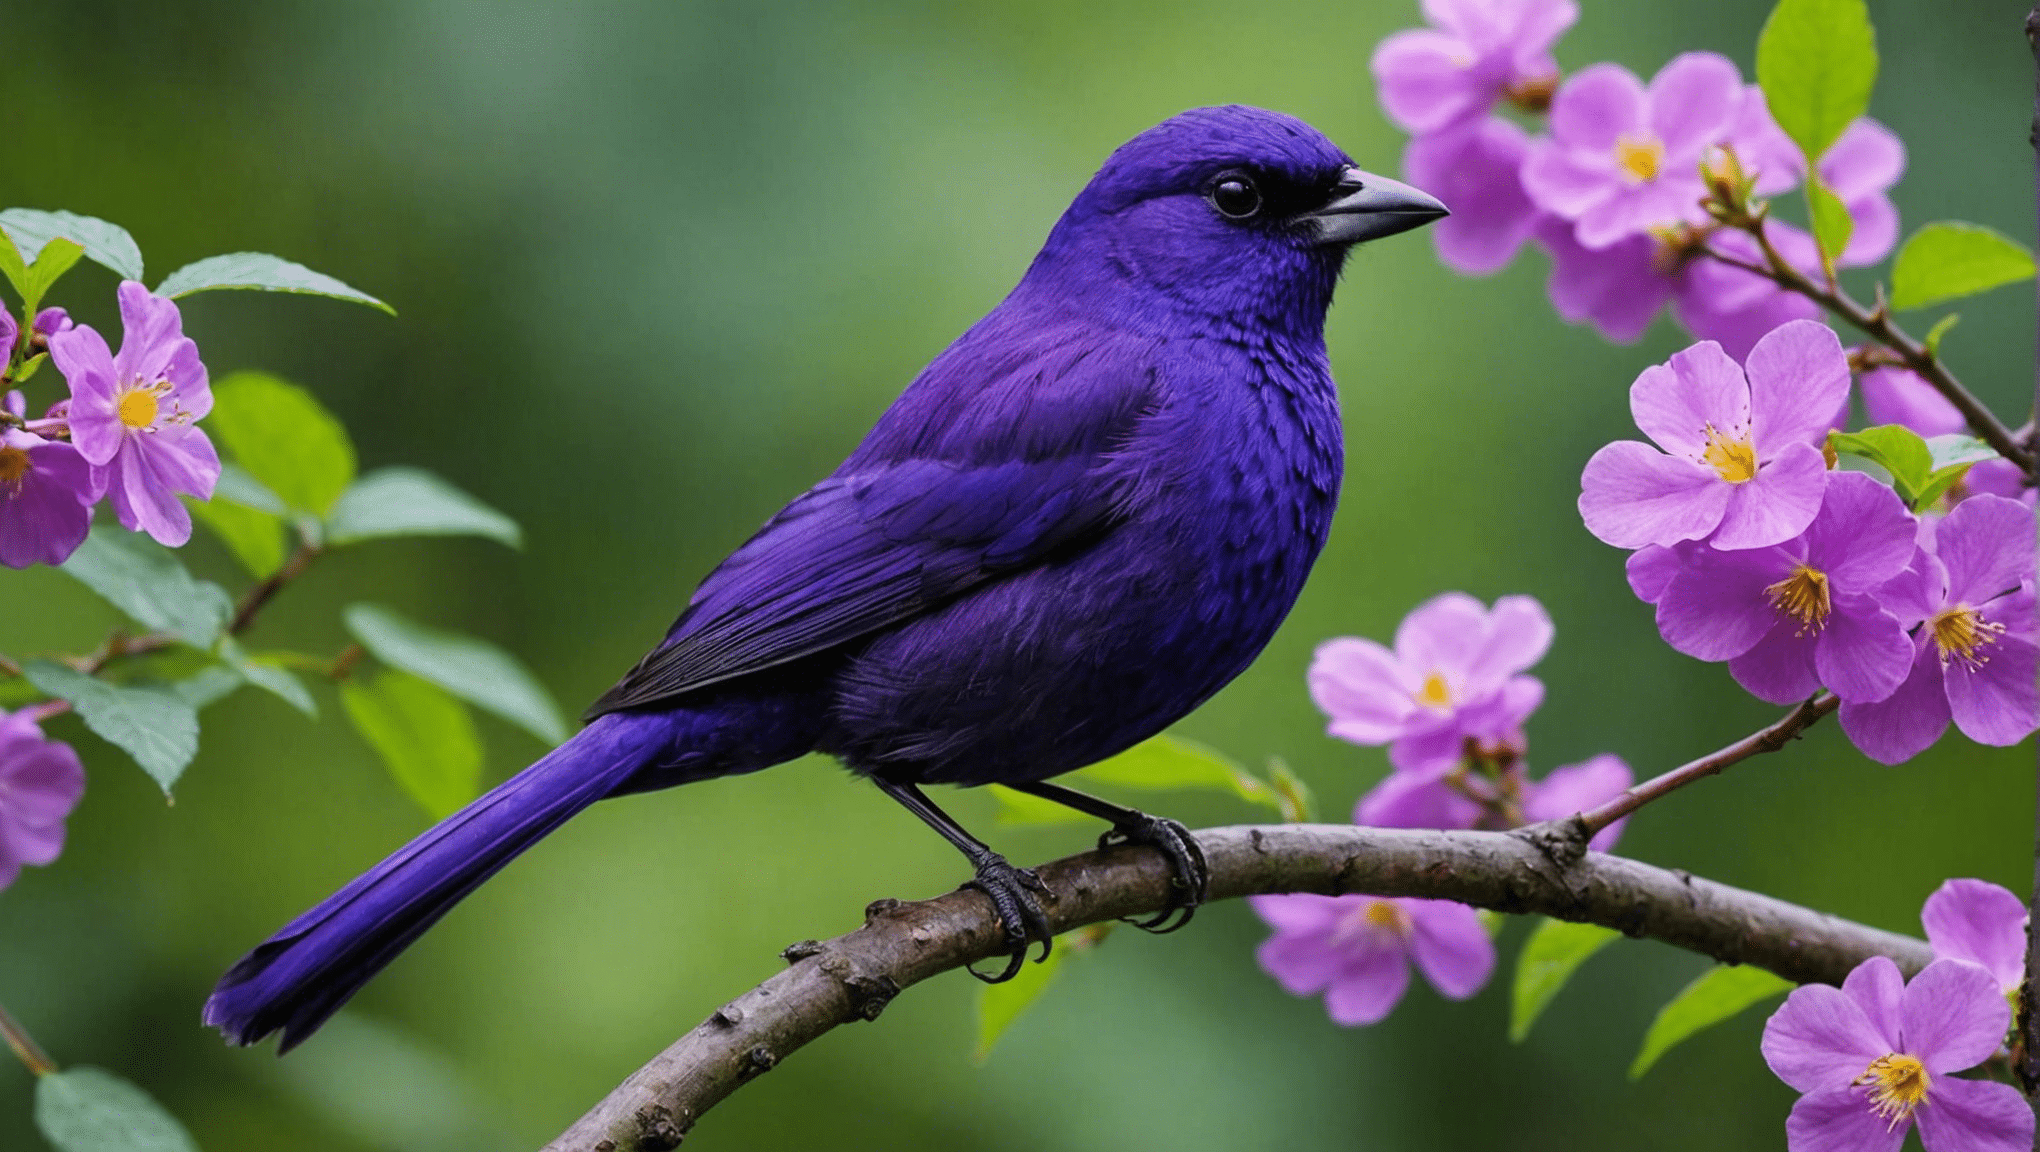 v tem informativnem članku o ptičjih vrstah in njihovih edinstvenih barvah odkrijte, ali so vijolične ptice redke.